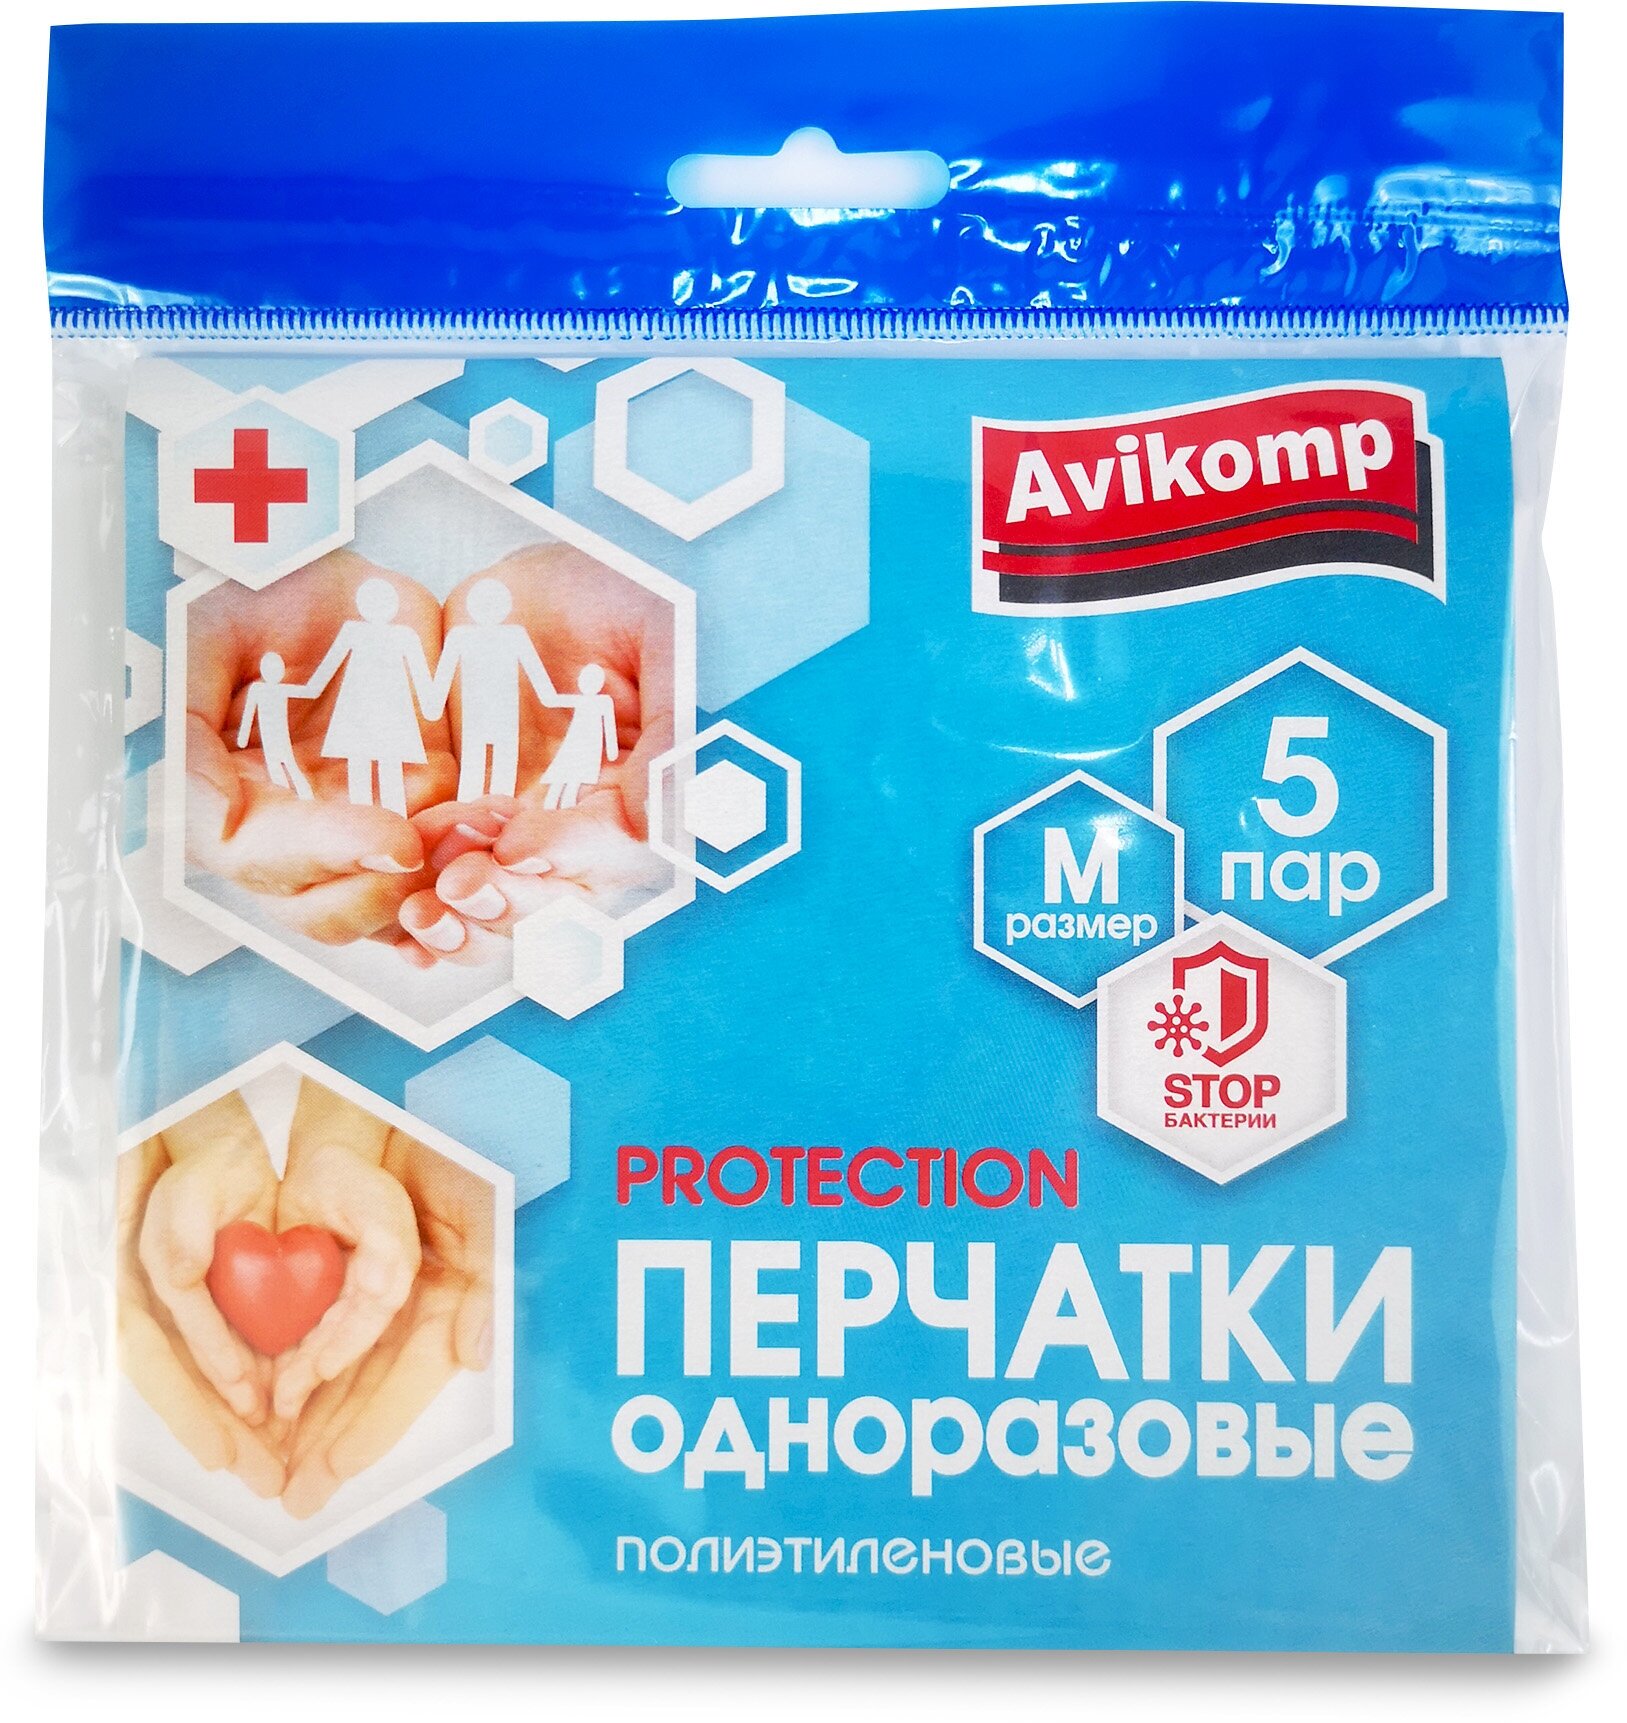 Перчатки одноразовые полиэтиленовые Protection, Avikomp, 5пар, размер М, прозрачные